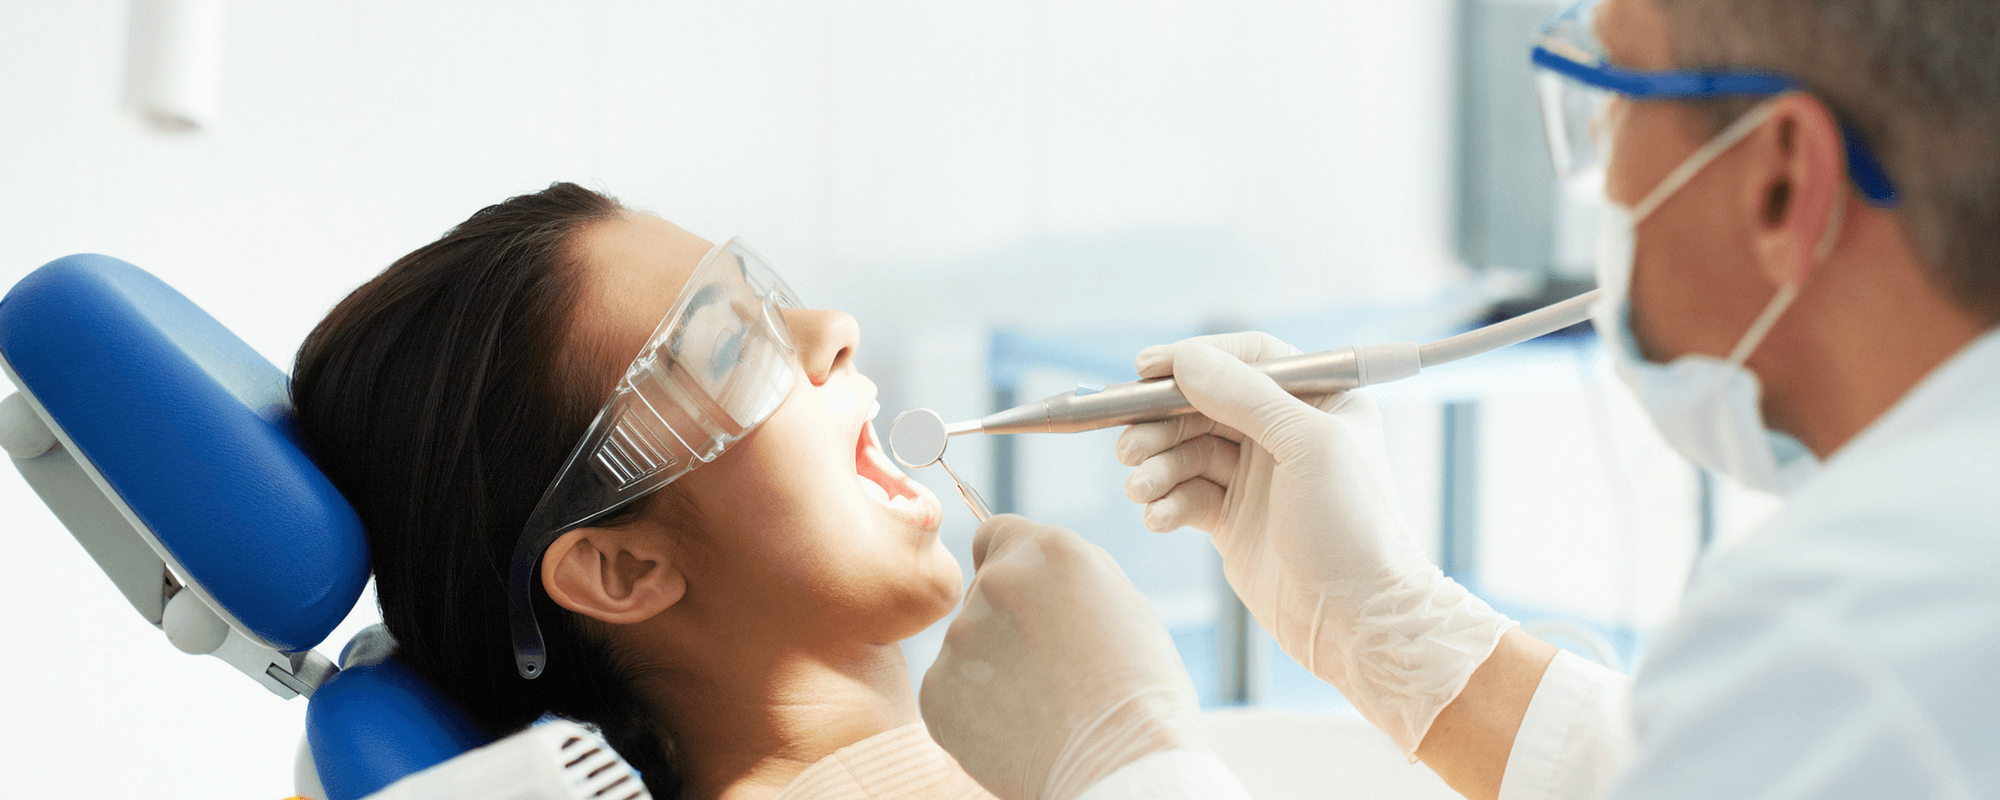 Tannlege med utstyr som behandler en pasient.